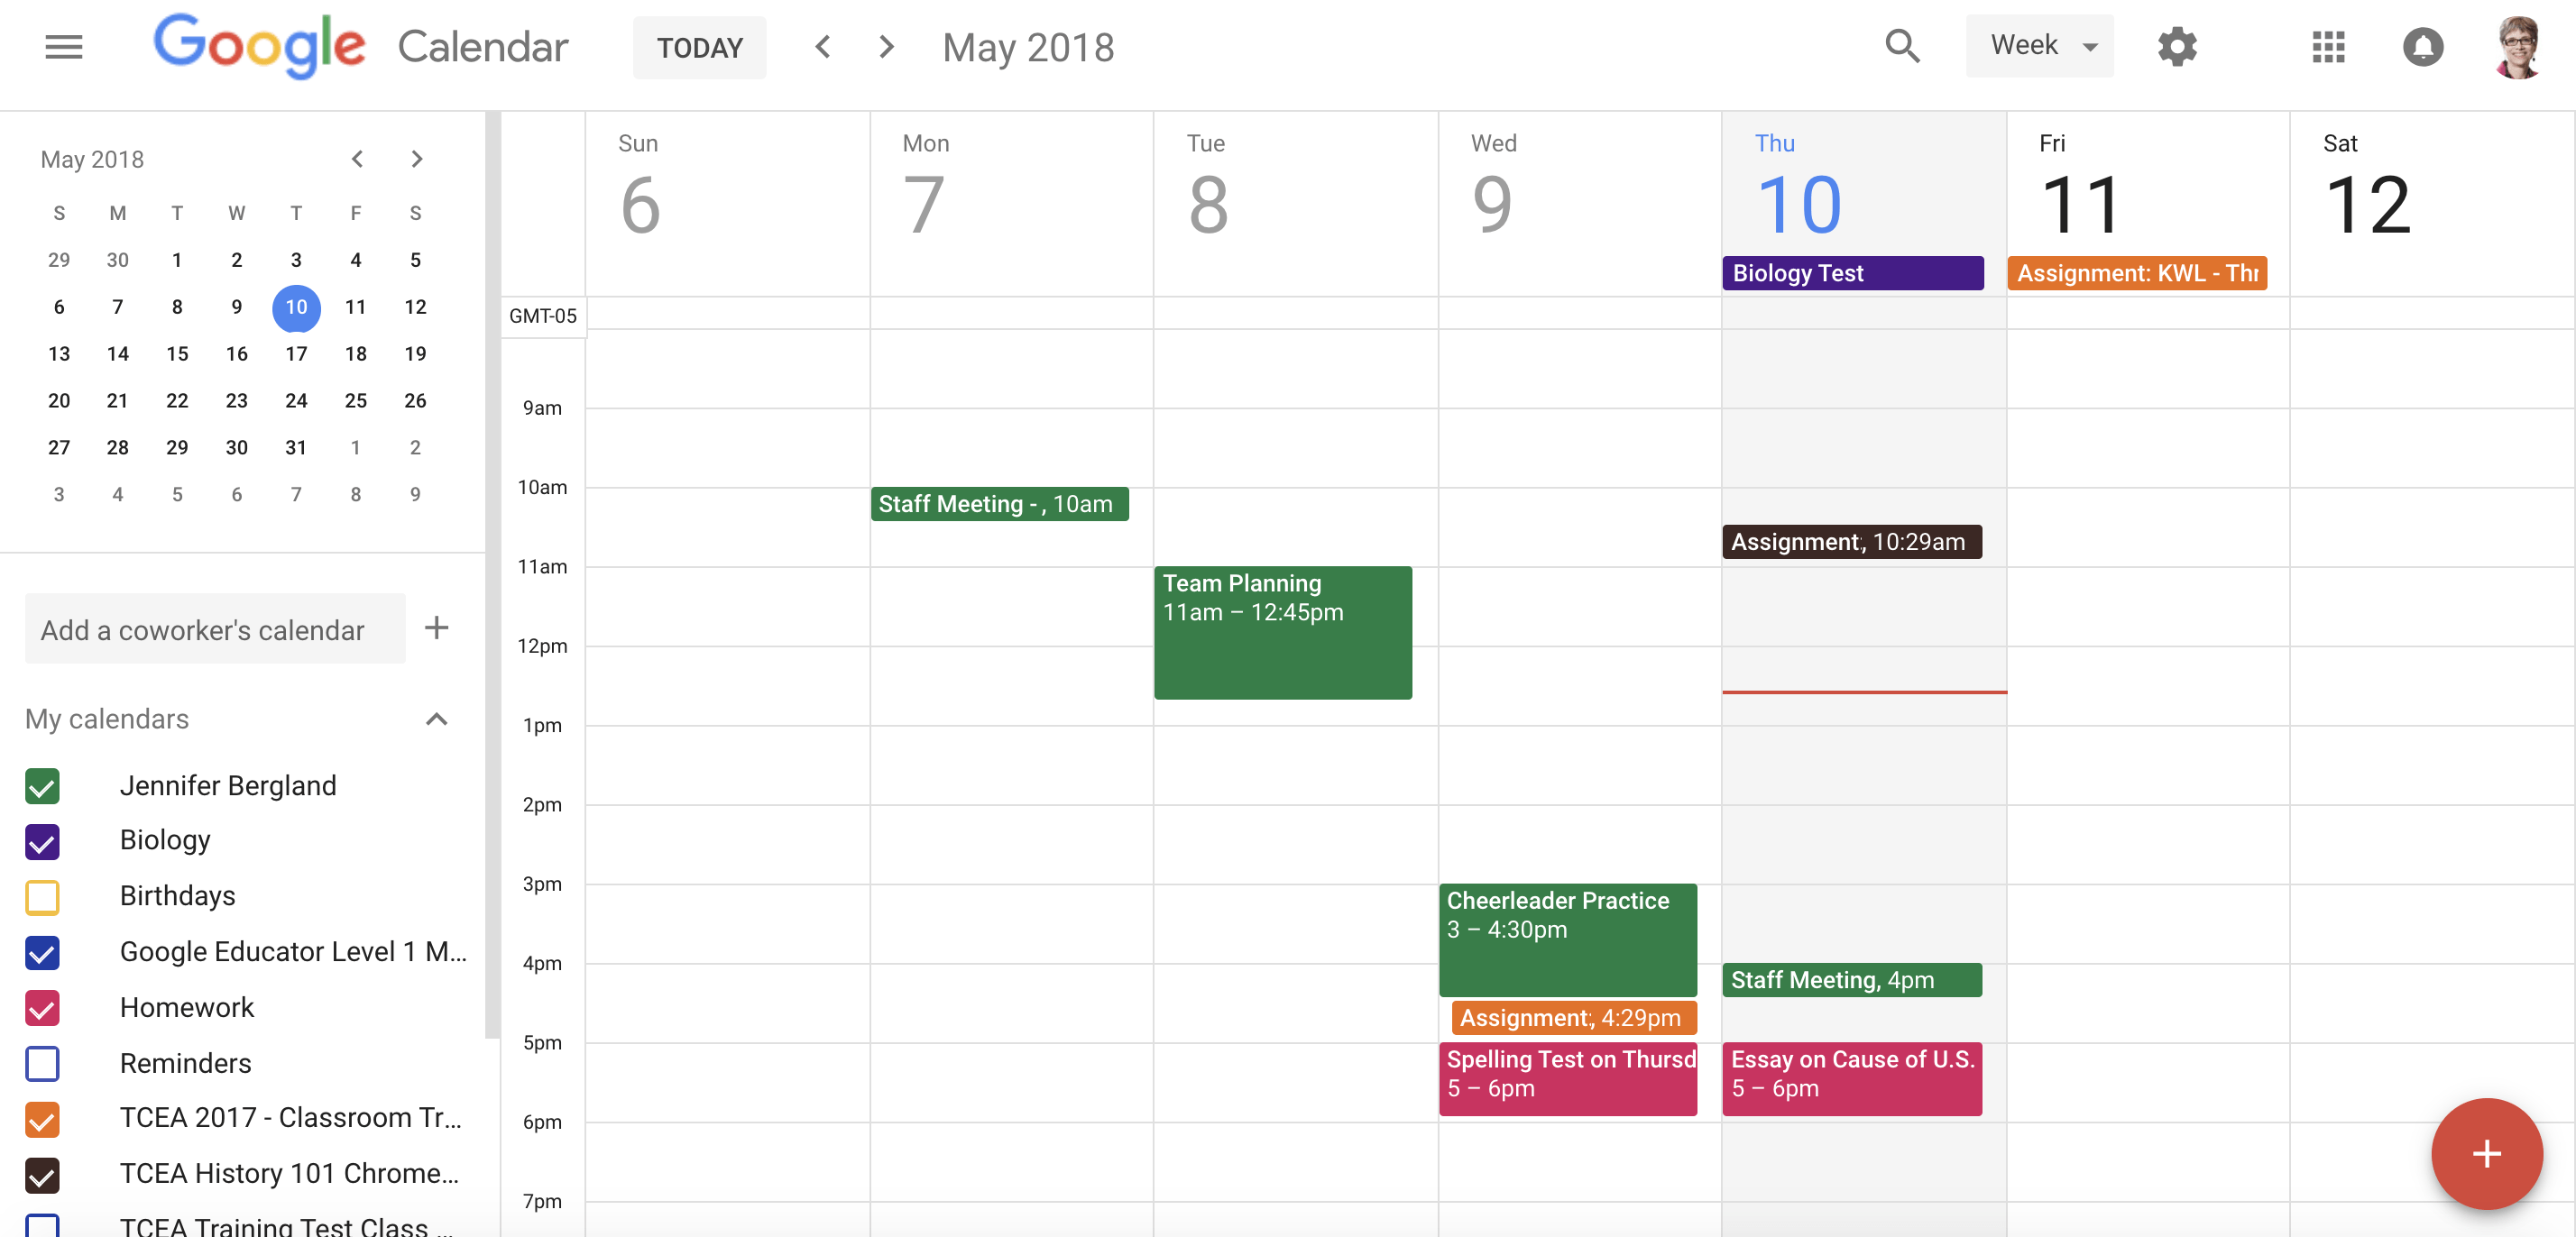 Google Calendar / Teacher Planner Google Calendar Edtechreview / There